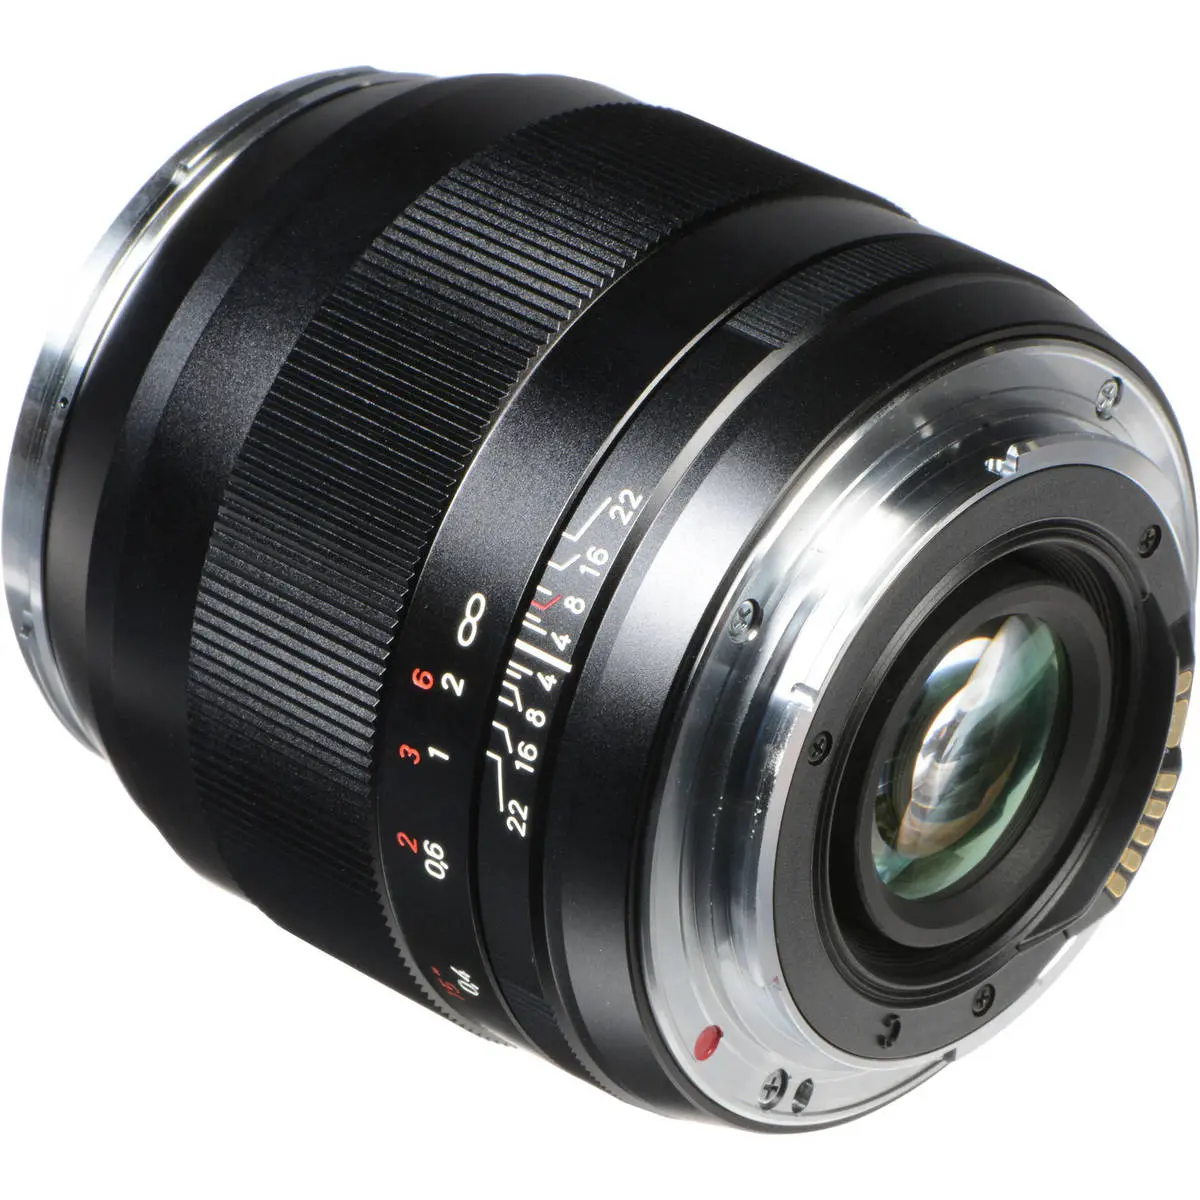 2. Carl Zeiss ZE  2/28mm (Canon) Lens